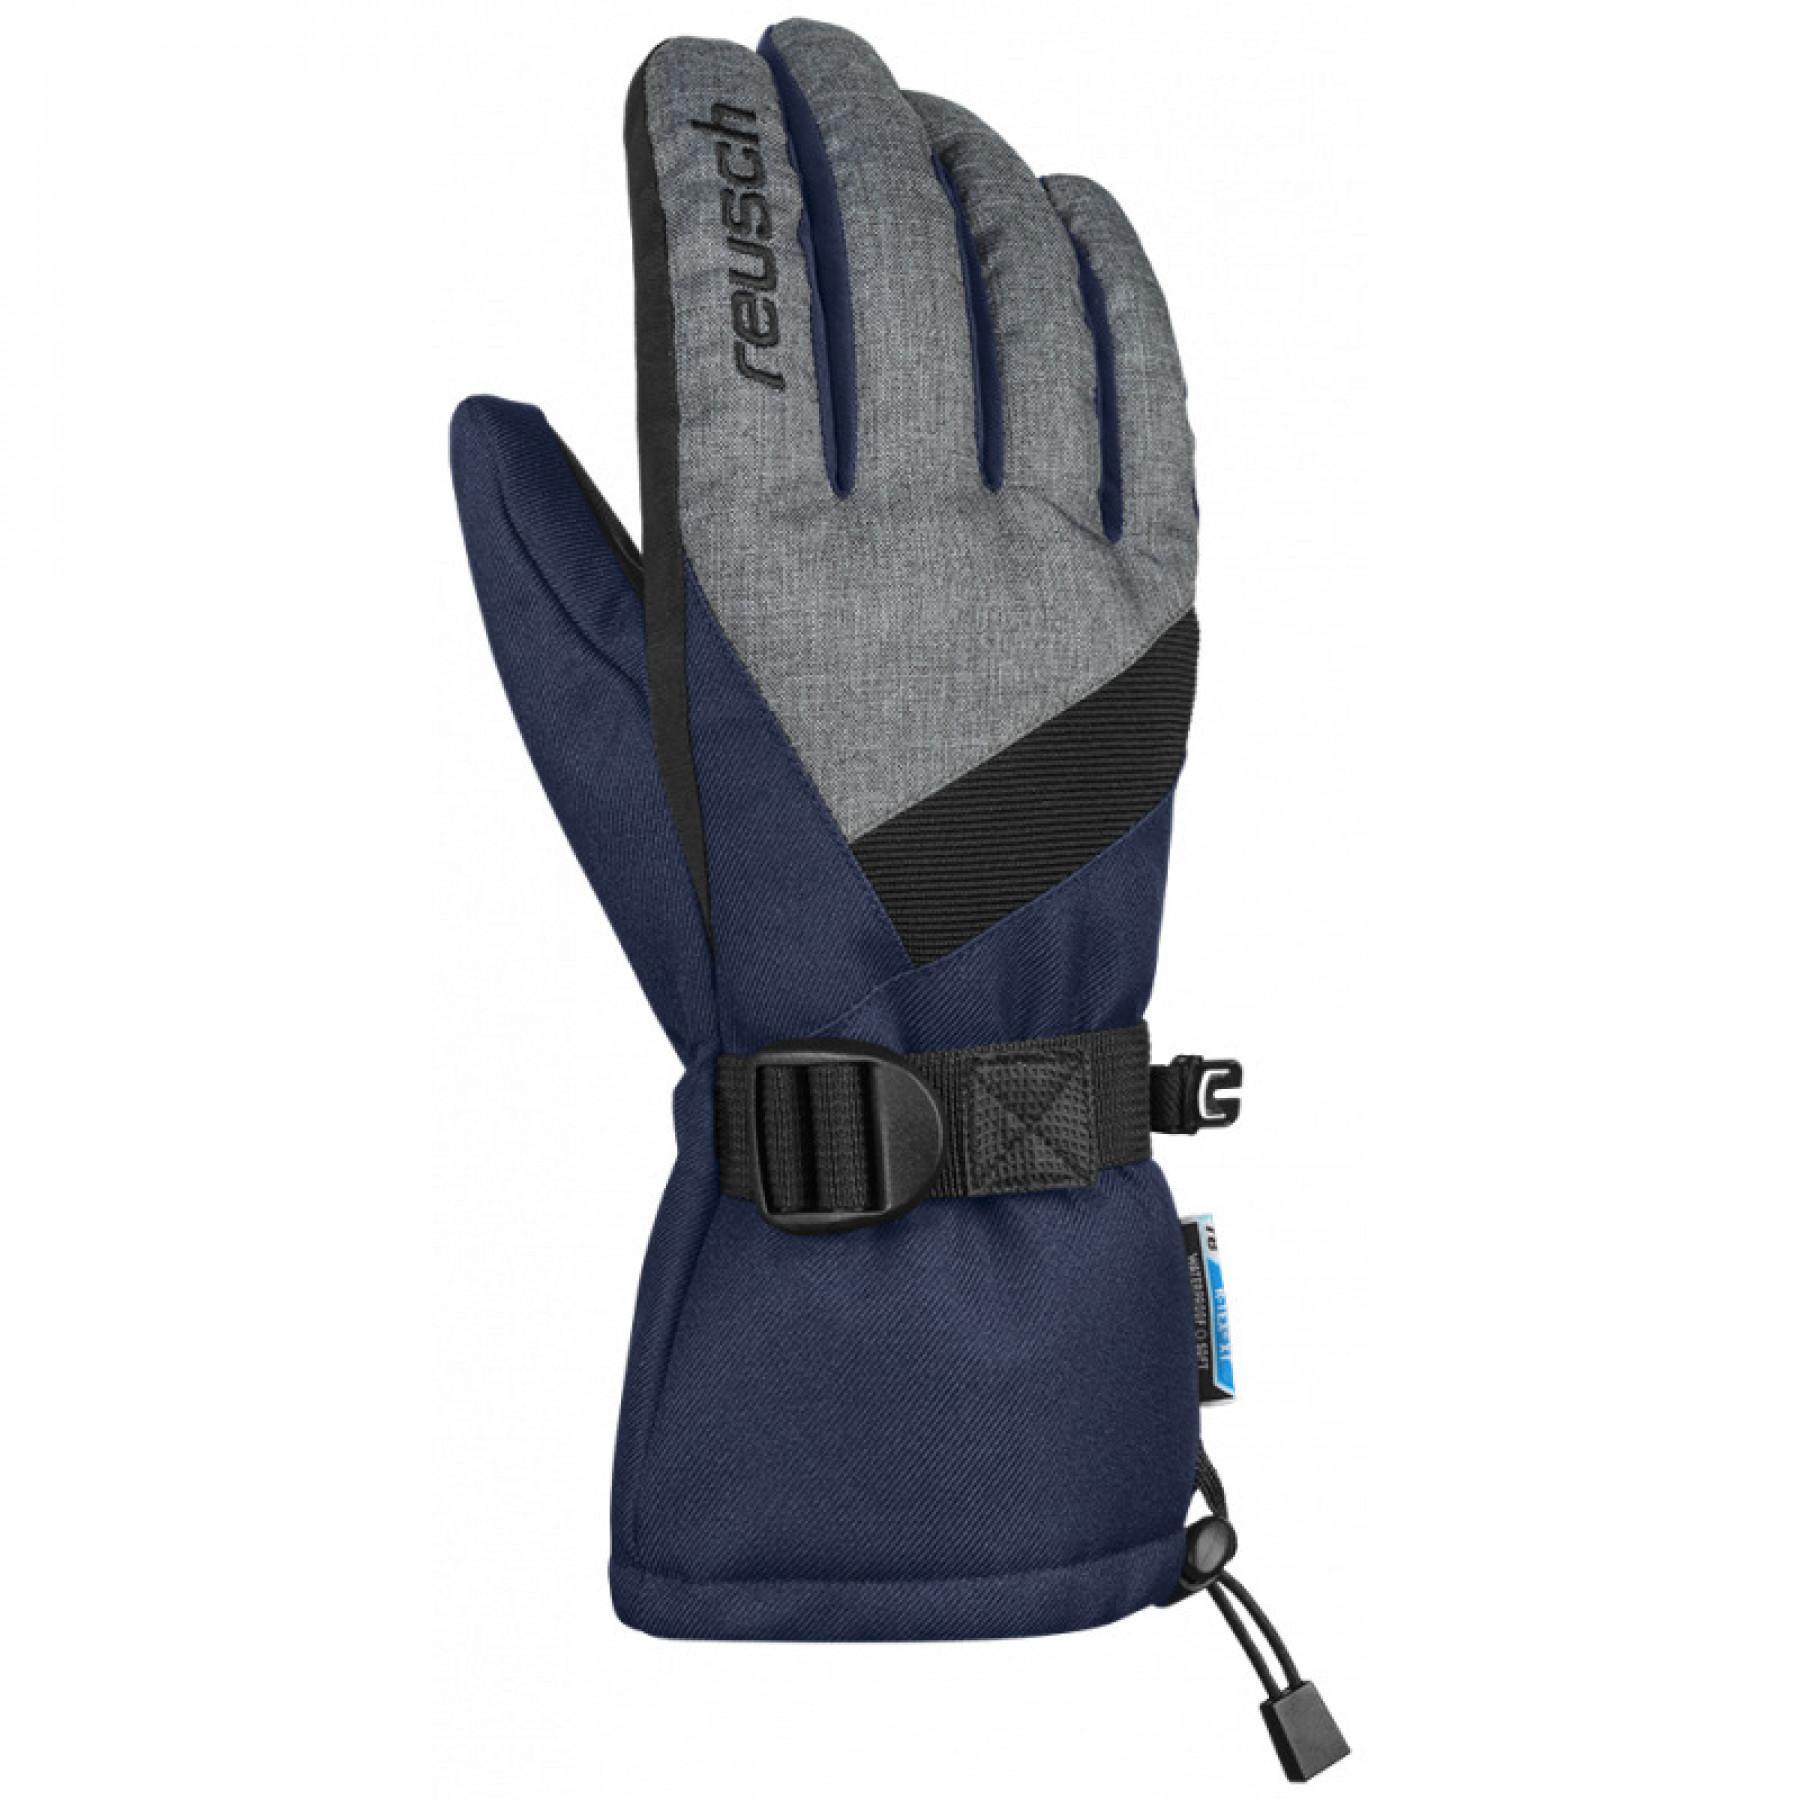 Handschuhe Reusch Outset R-tex® XT